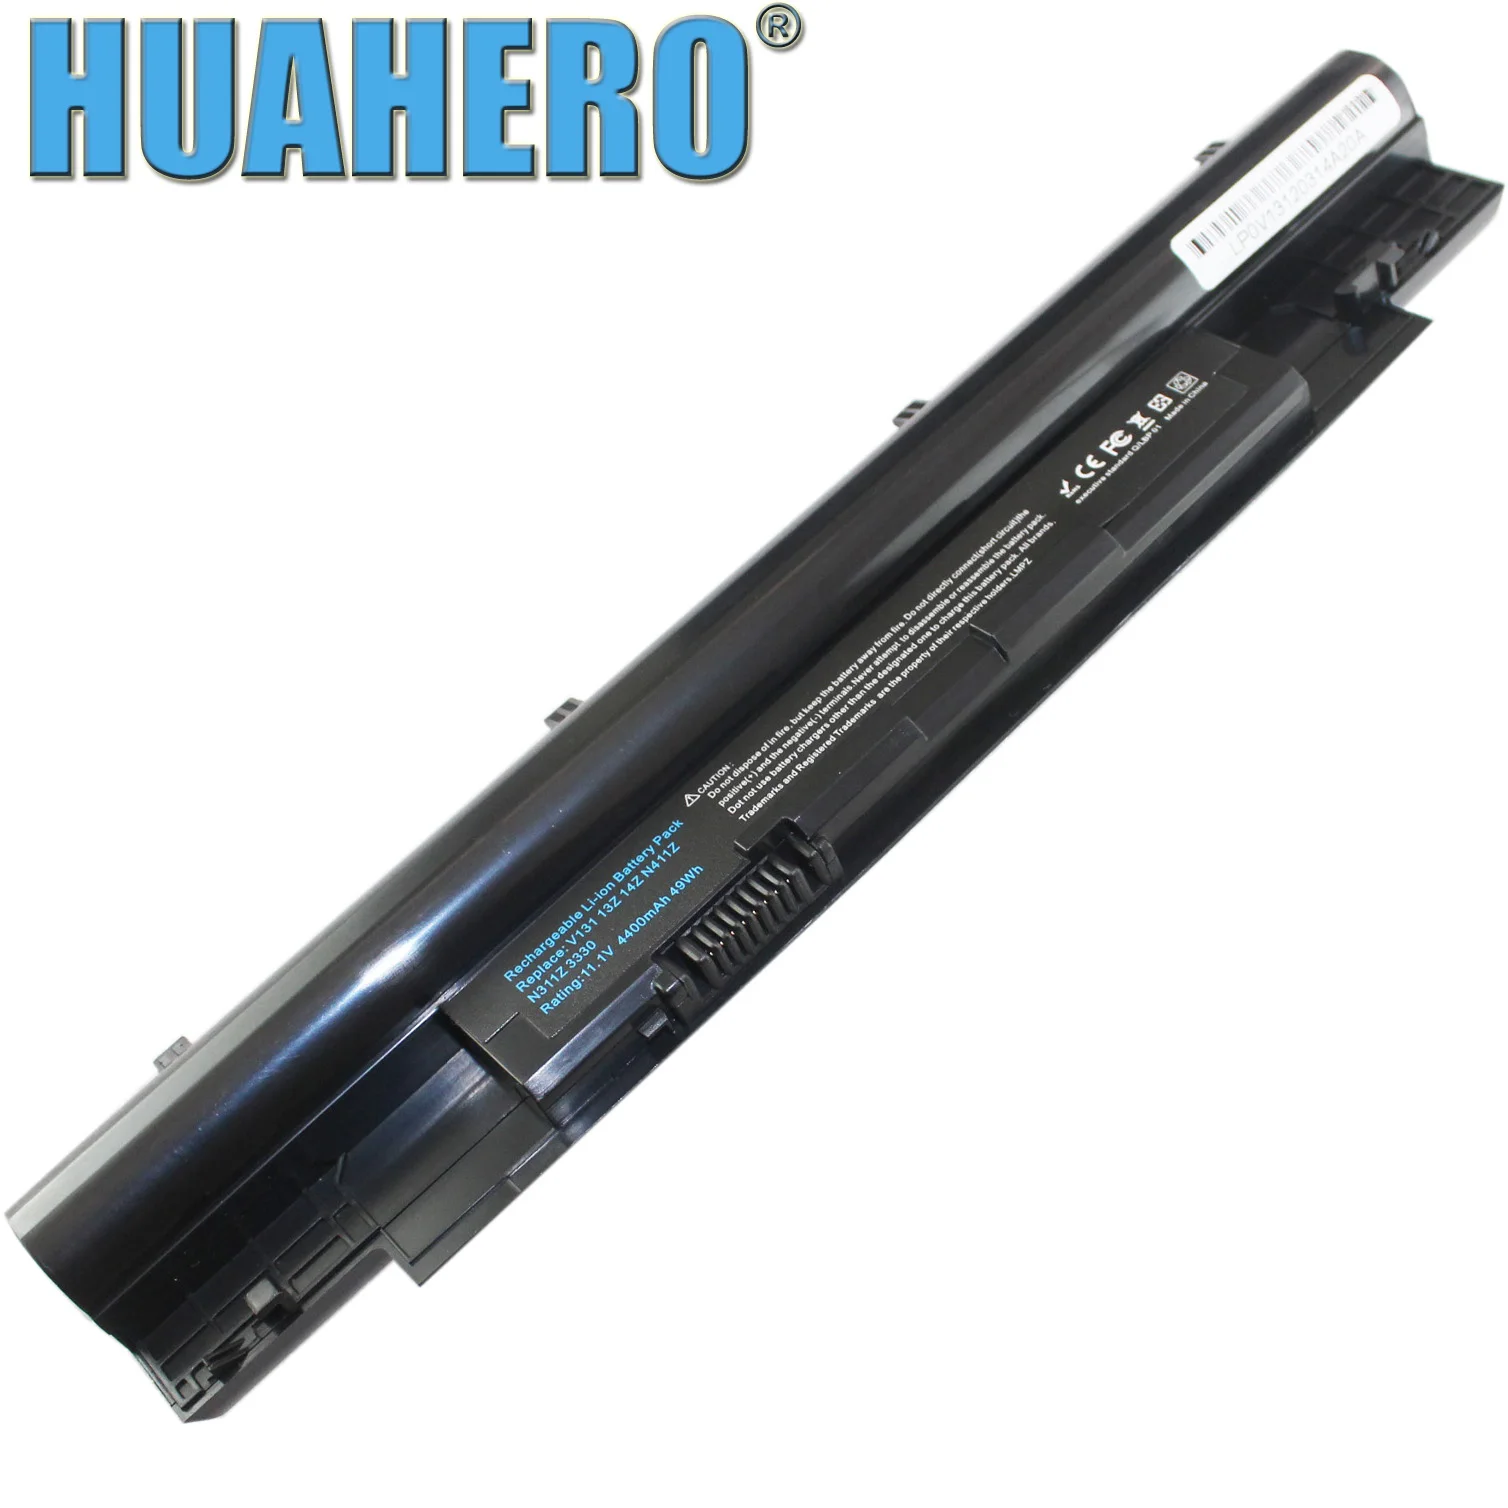 HUAHERO 268X5 Baterija Dell Vostro V131 V131D V131R N311z N411z Platuma 3330 N2DN5 H2XW1 JD41Y 312-1257 312-1258 N2DN5 H7XW1